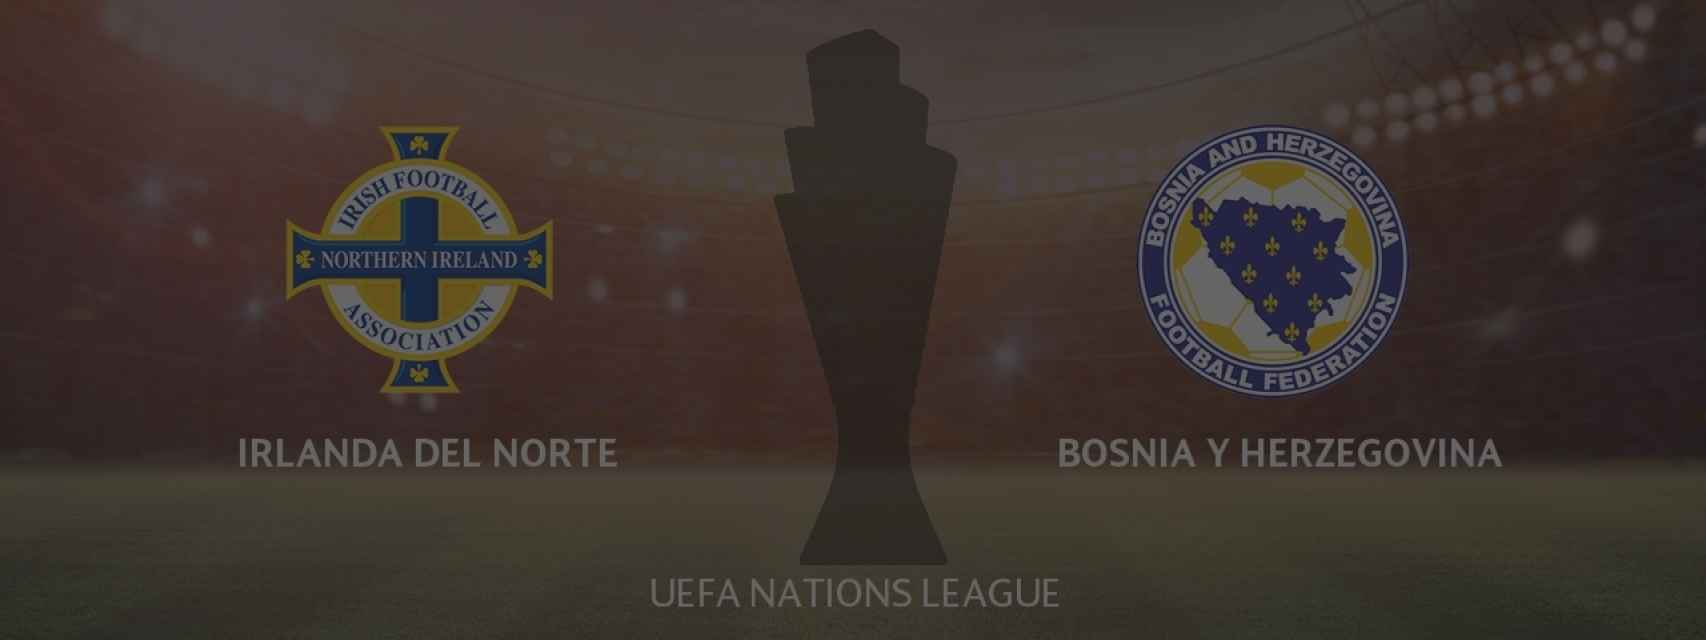 Irlanda del Norte - Bosnia Herzegovina, UEFA Nations League